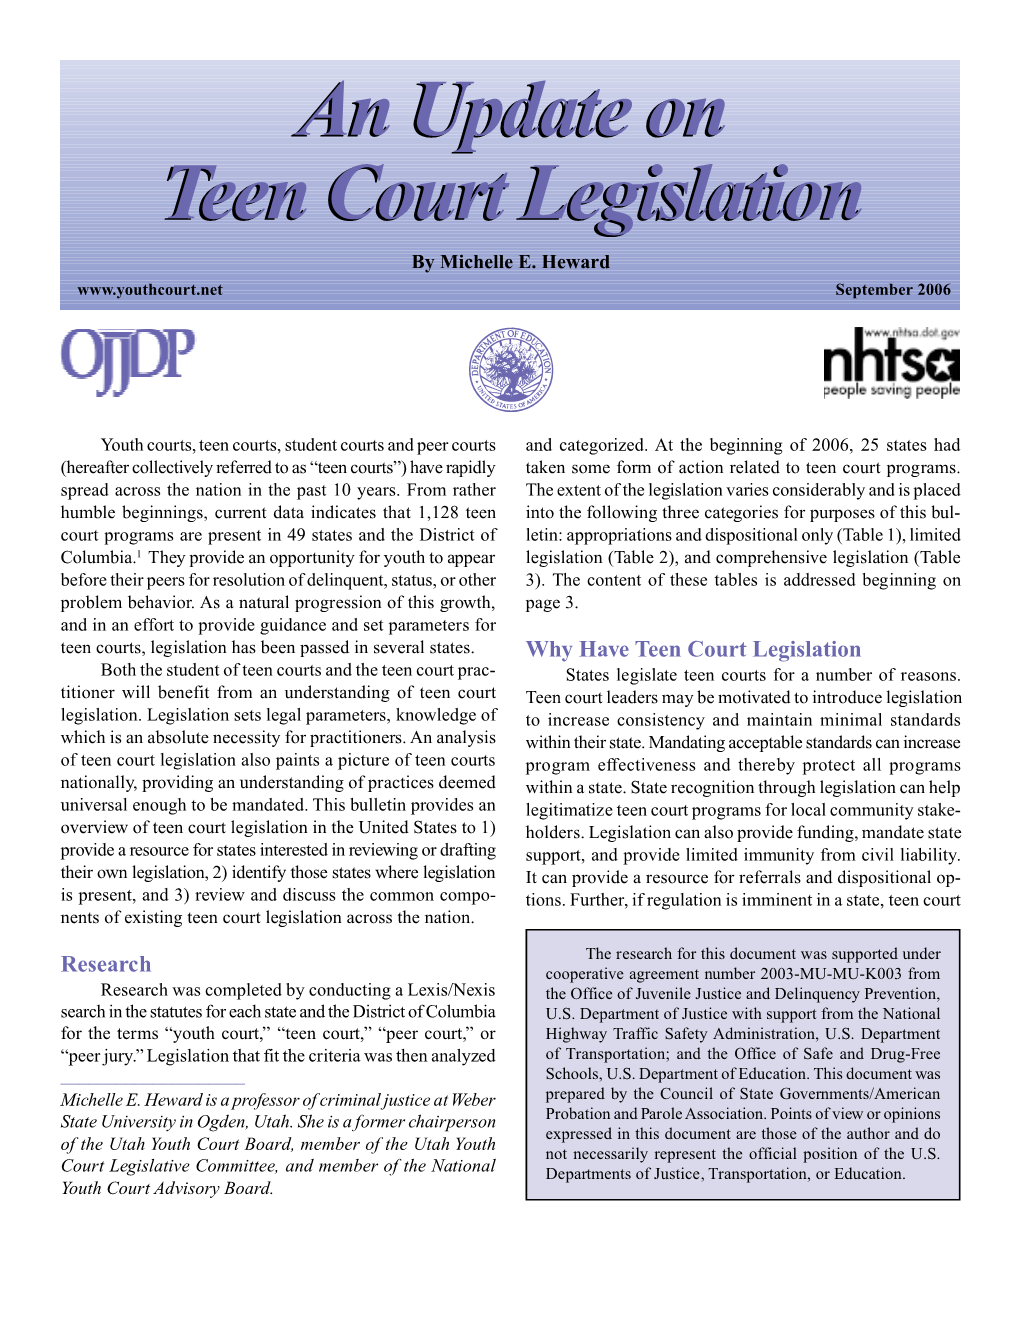 An Update on Teen Court Legislation